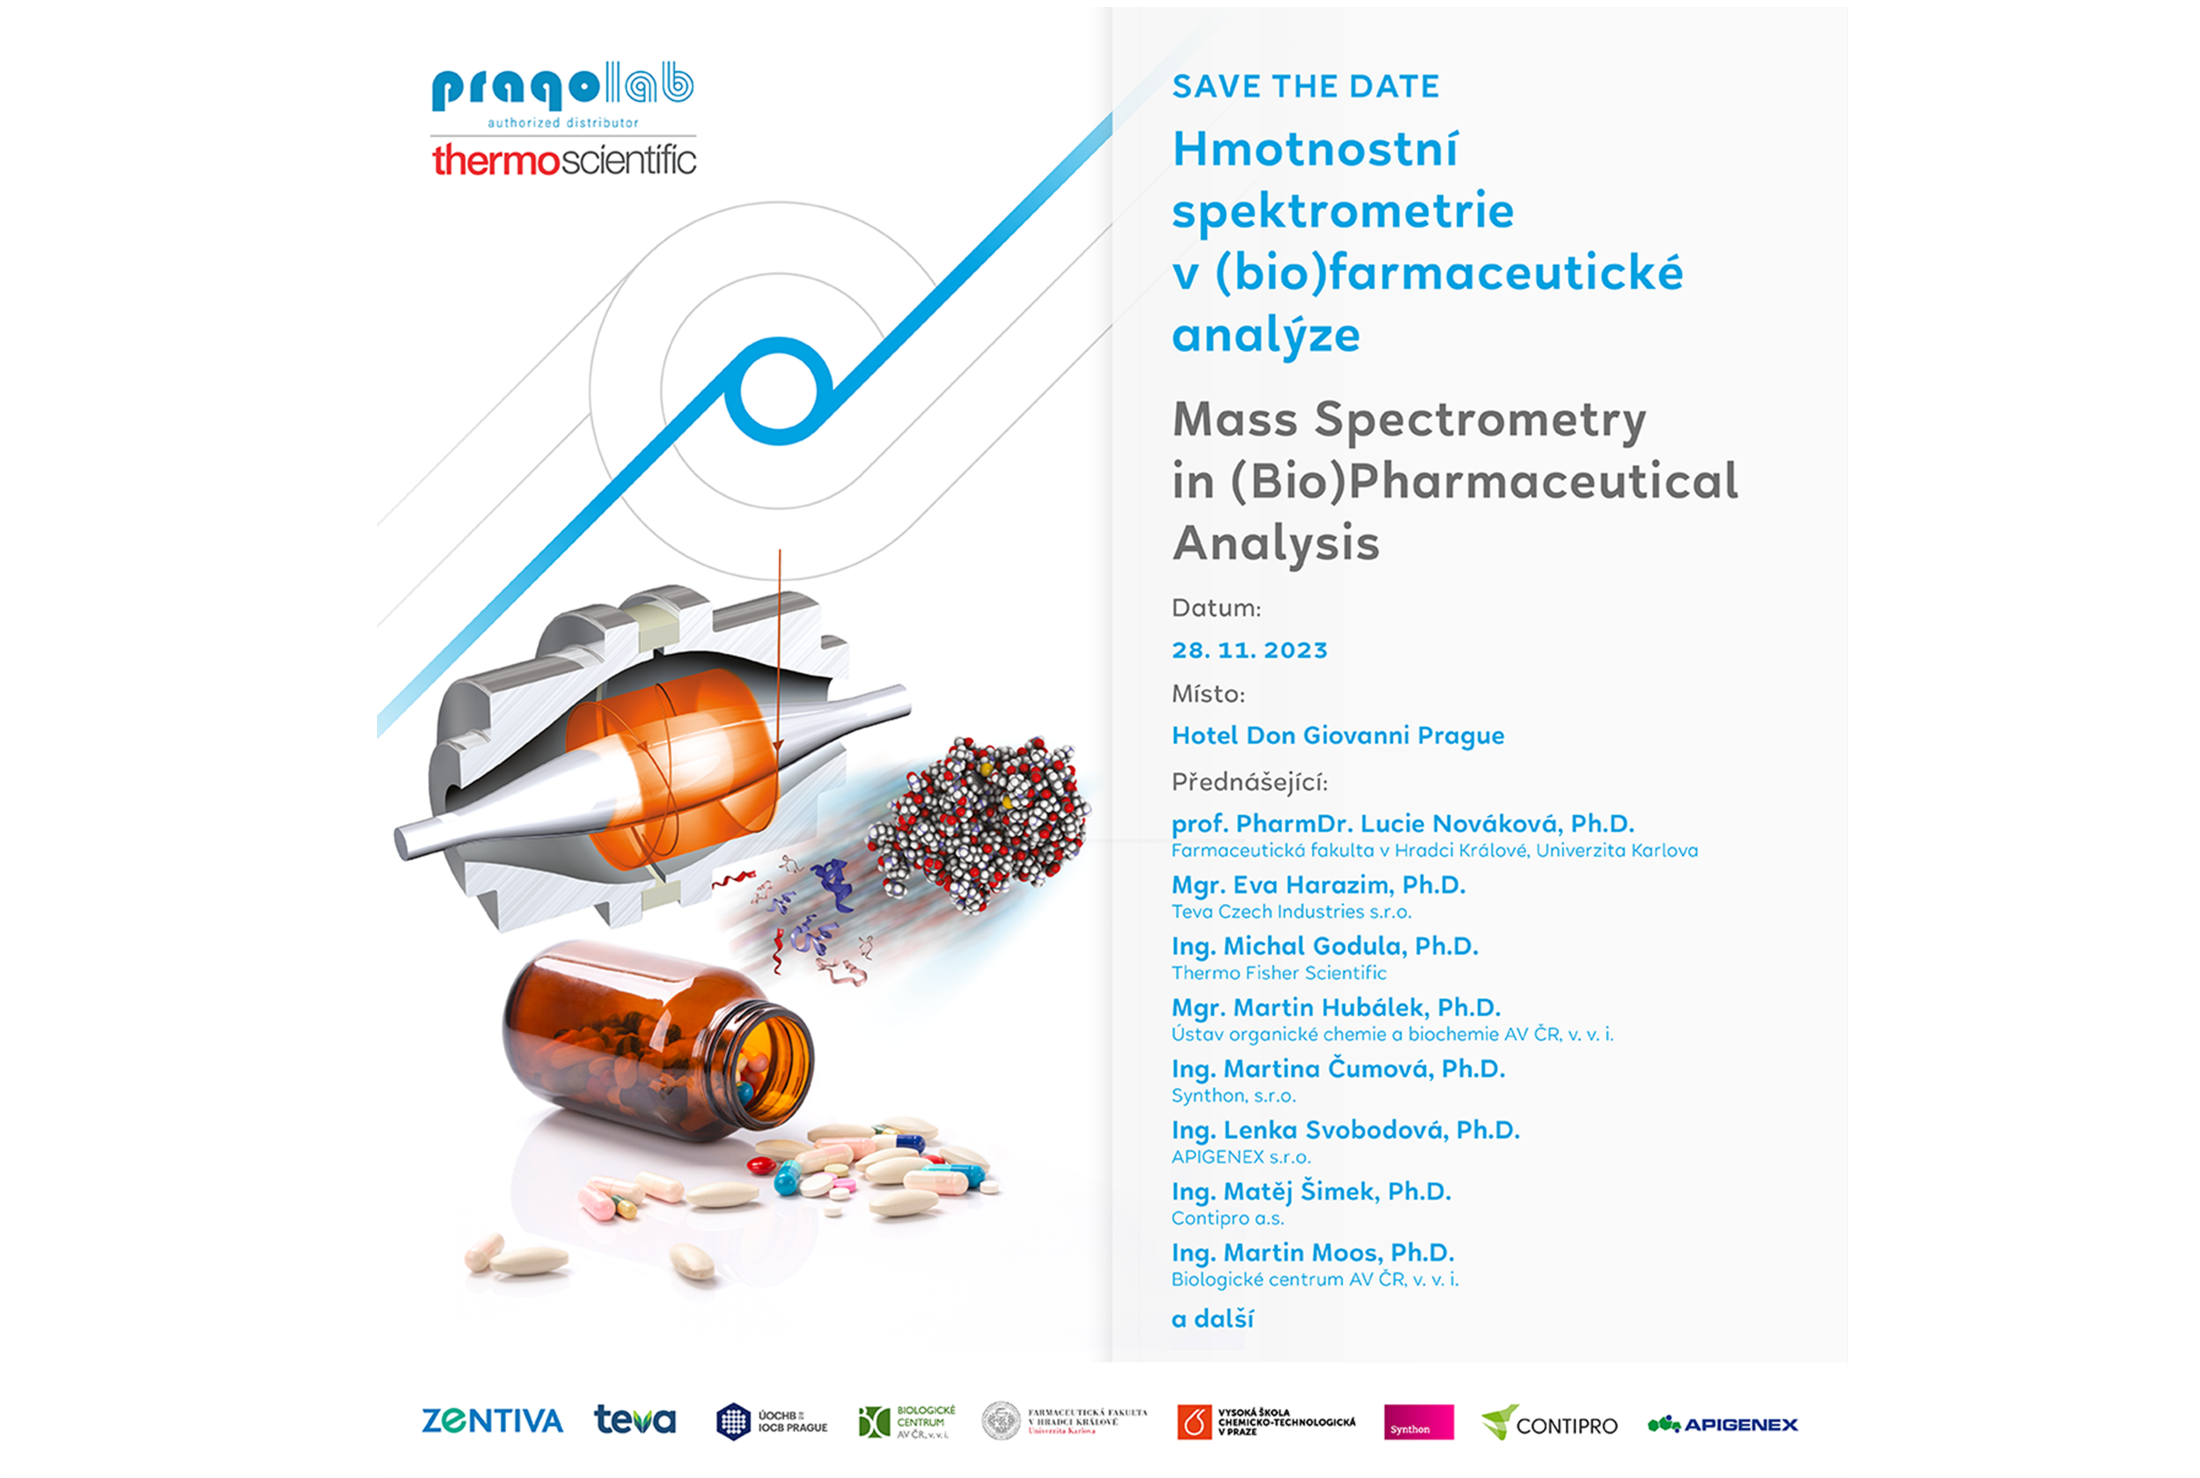 SAVE THE DATE: Hmotnostní spektrometrie v (bio)farmaceutické analýze